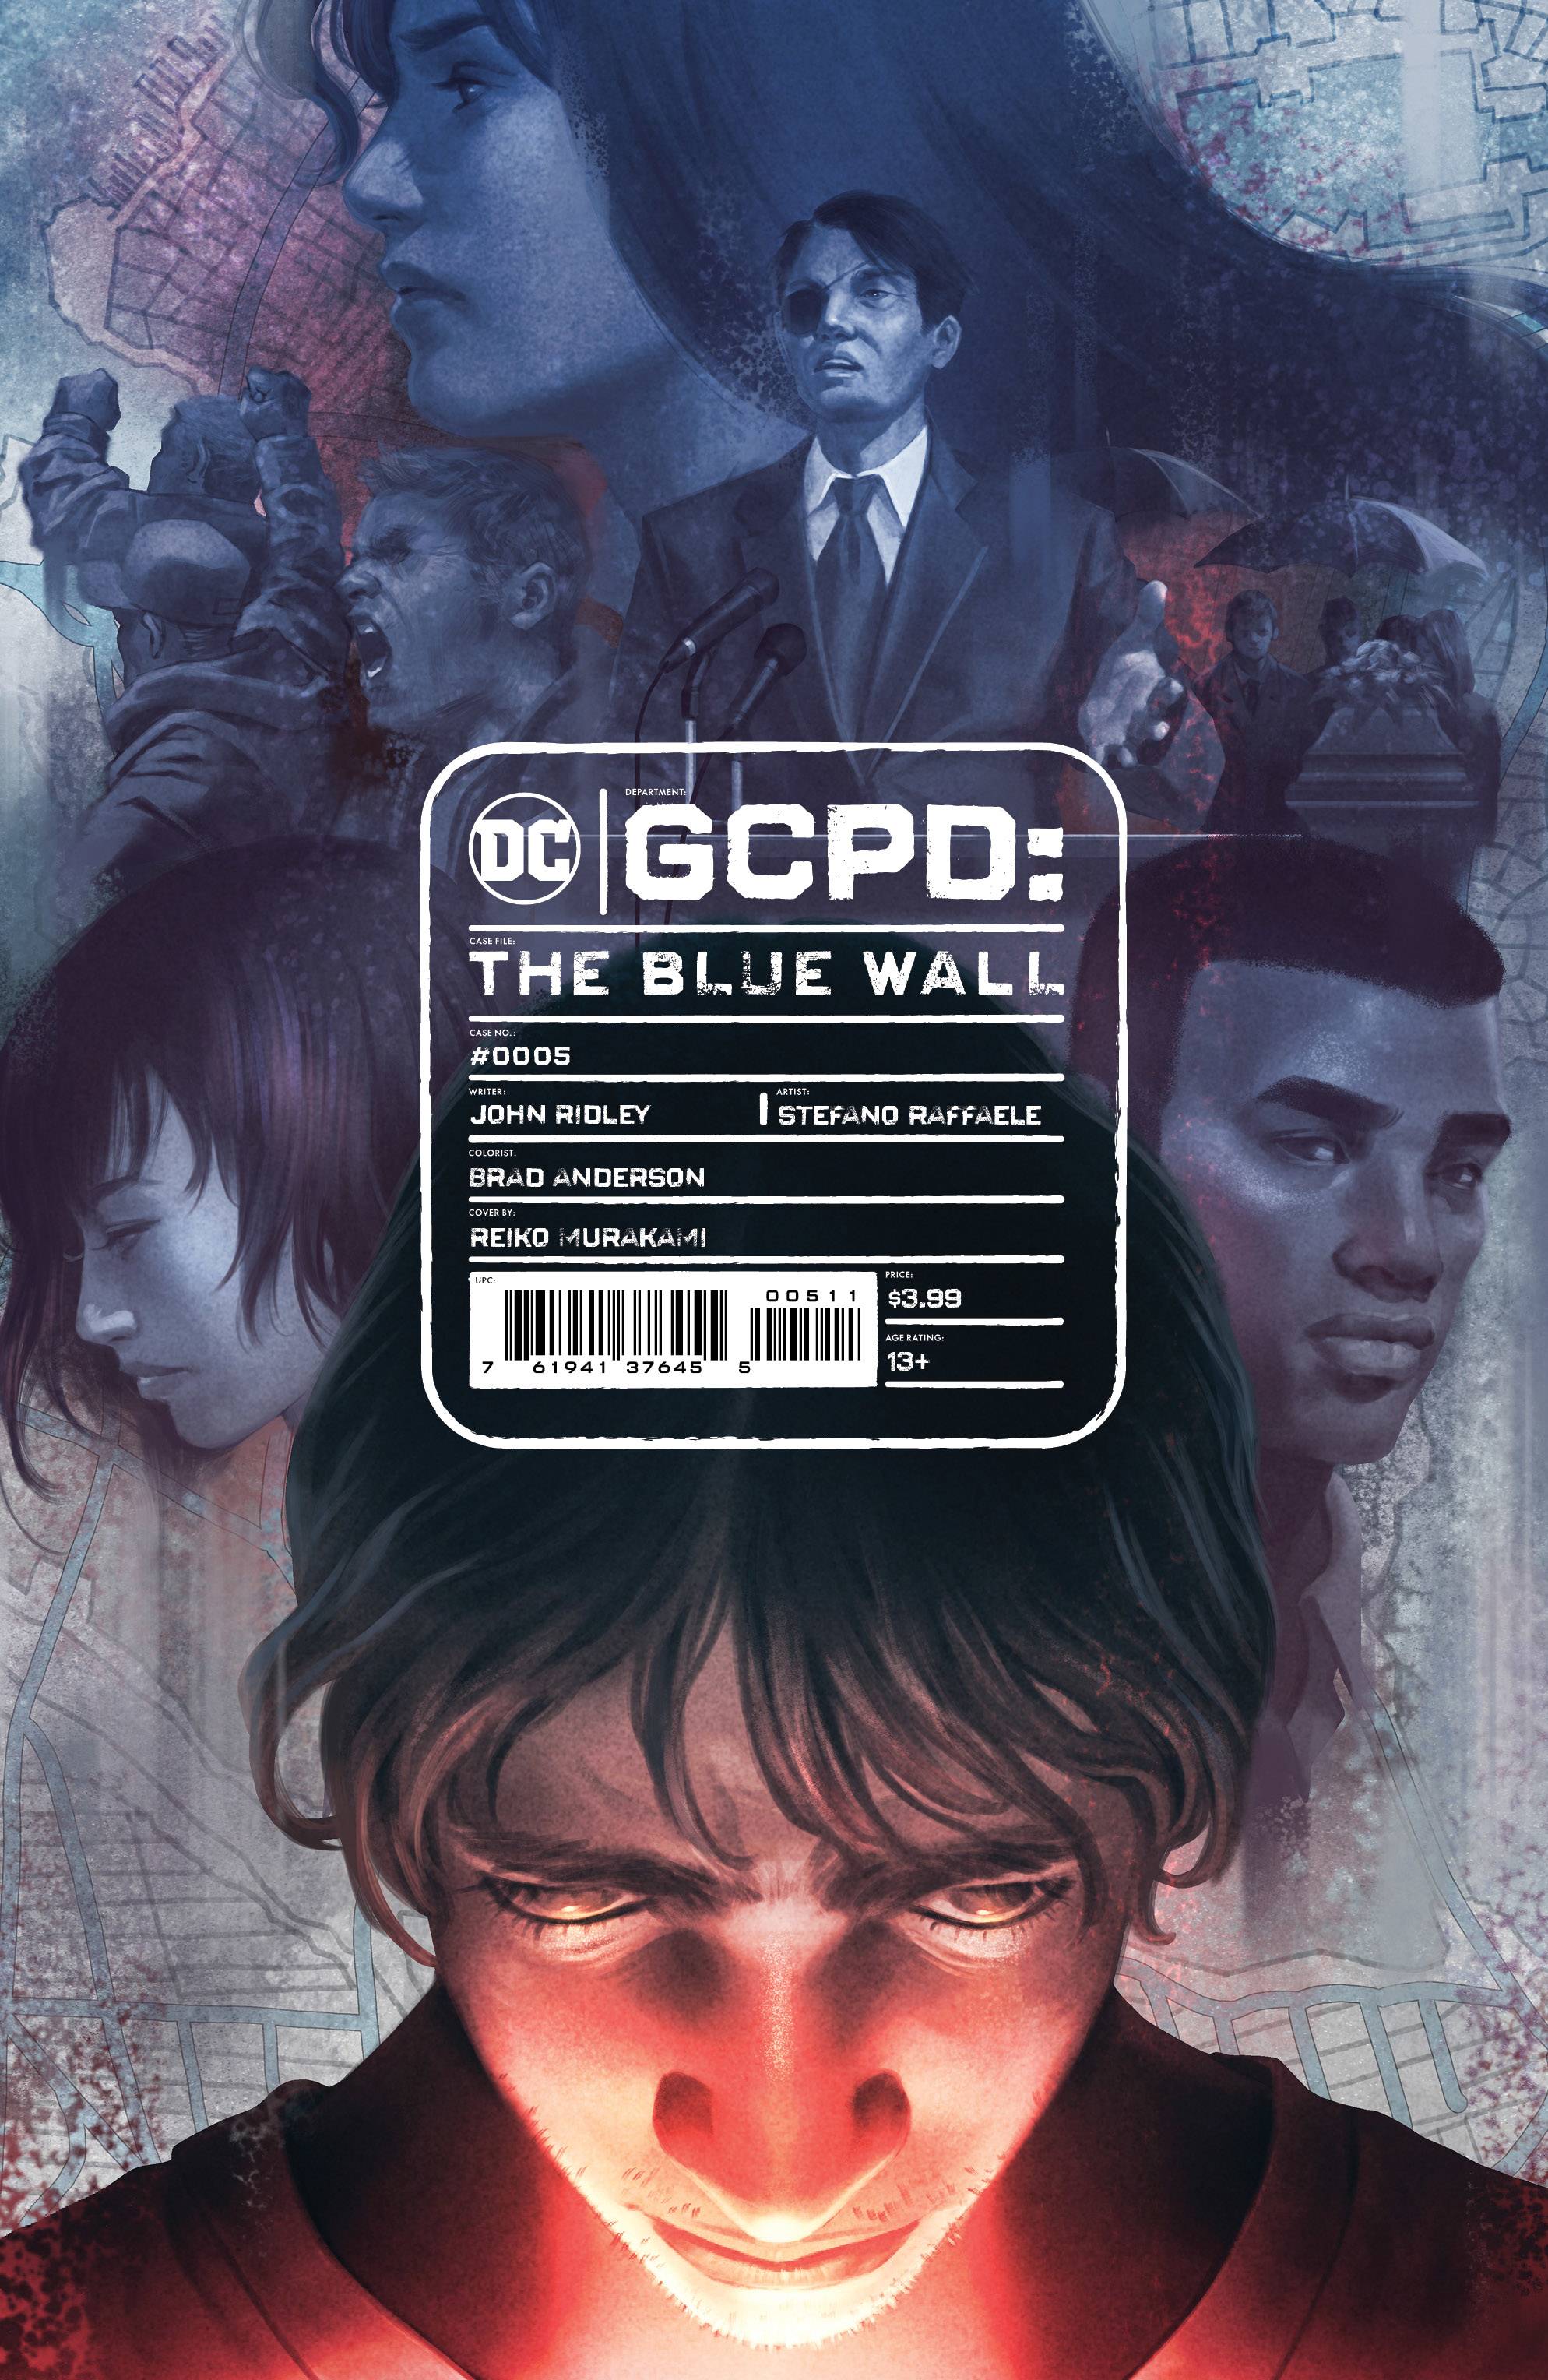 GCPD THE BLUE WALL #5 (OF 6) CVR A REIKO MURAKAMI